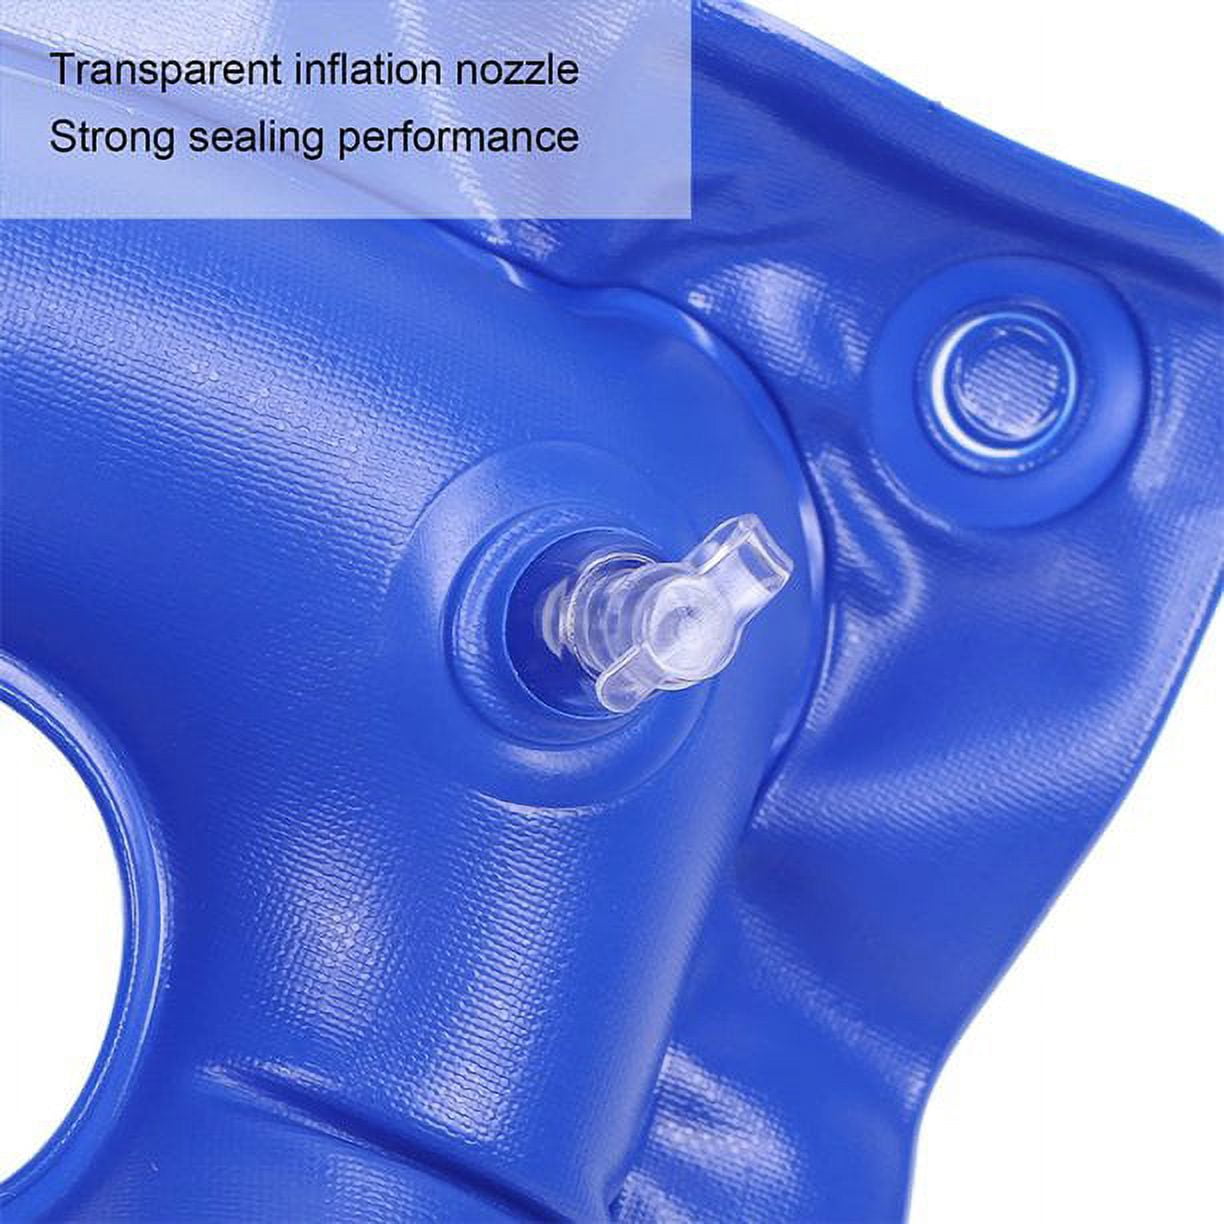 Inflatable Wheelchair Air Cushion 20x18x3 inch Relieve Pressure-High quality